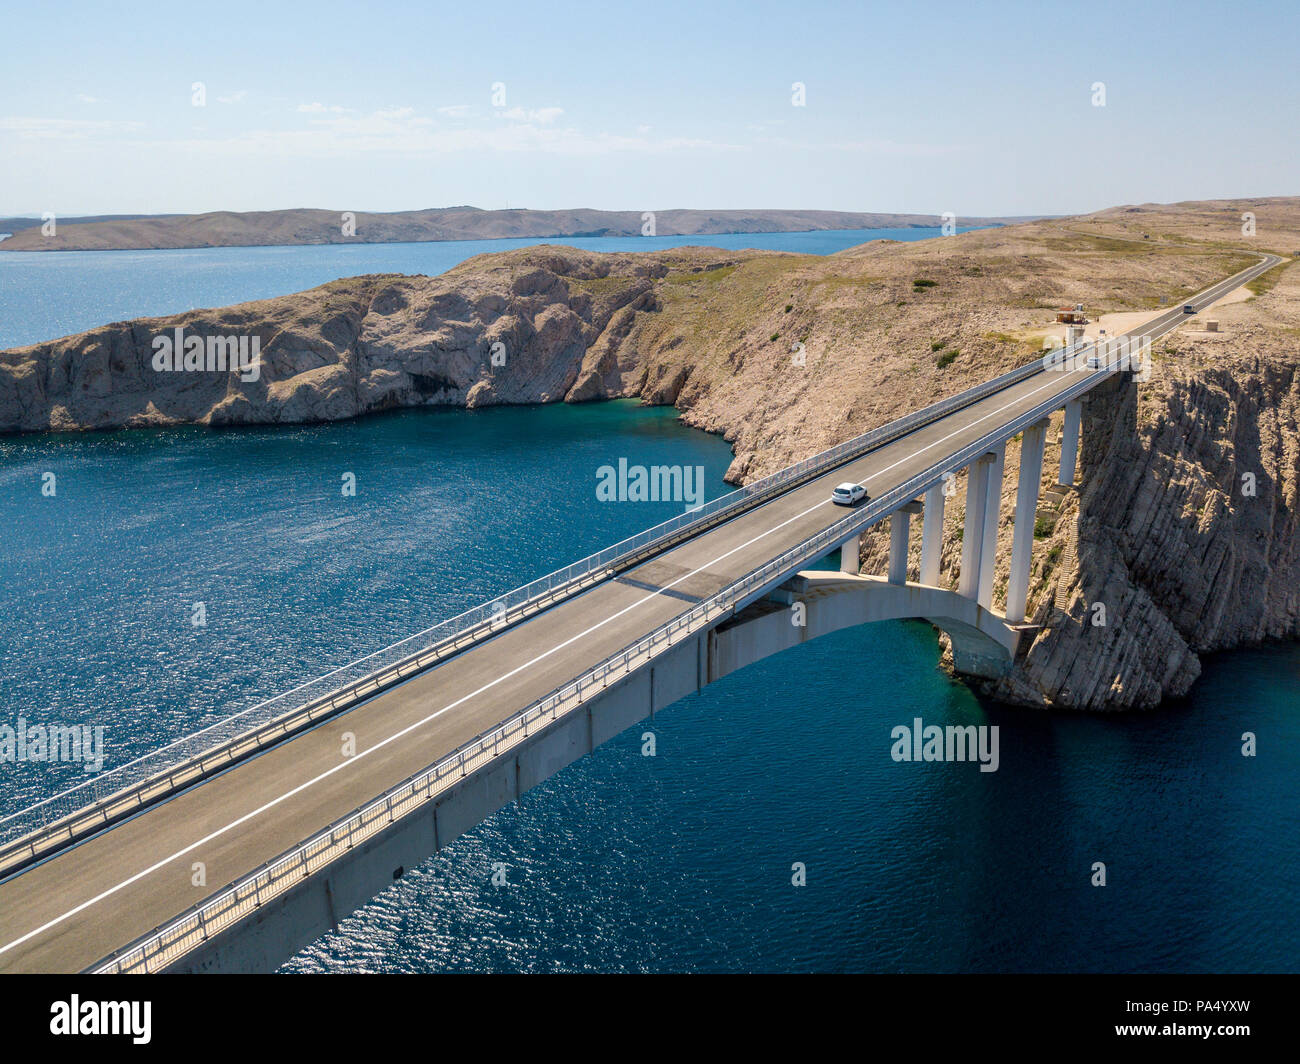 Vue aérienne du pont de l'île de Pag, Croatie, les routes et la côte croate. Falaise dominant la mer. Voitures traversant le pont vu d'en haut Banque D'Images